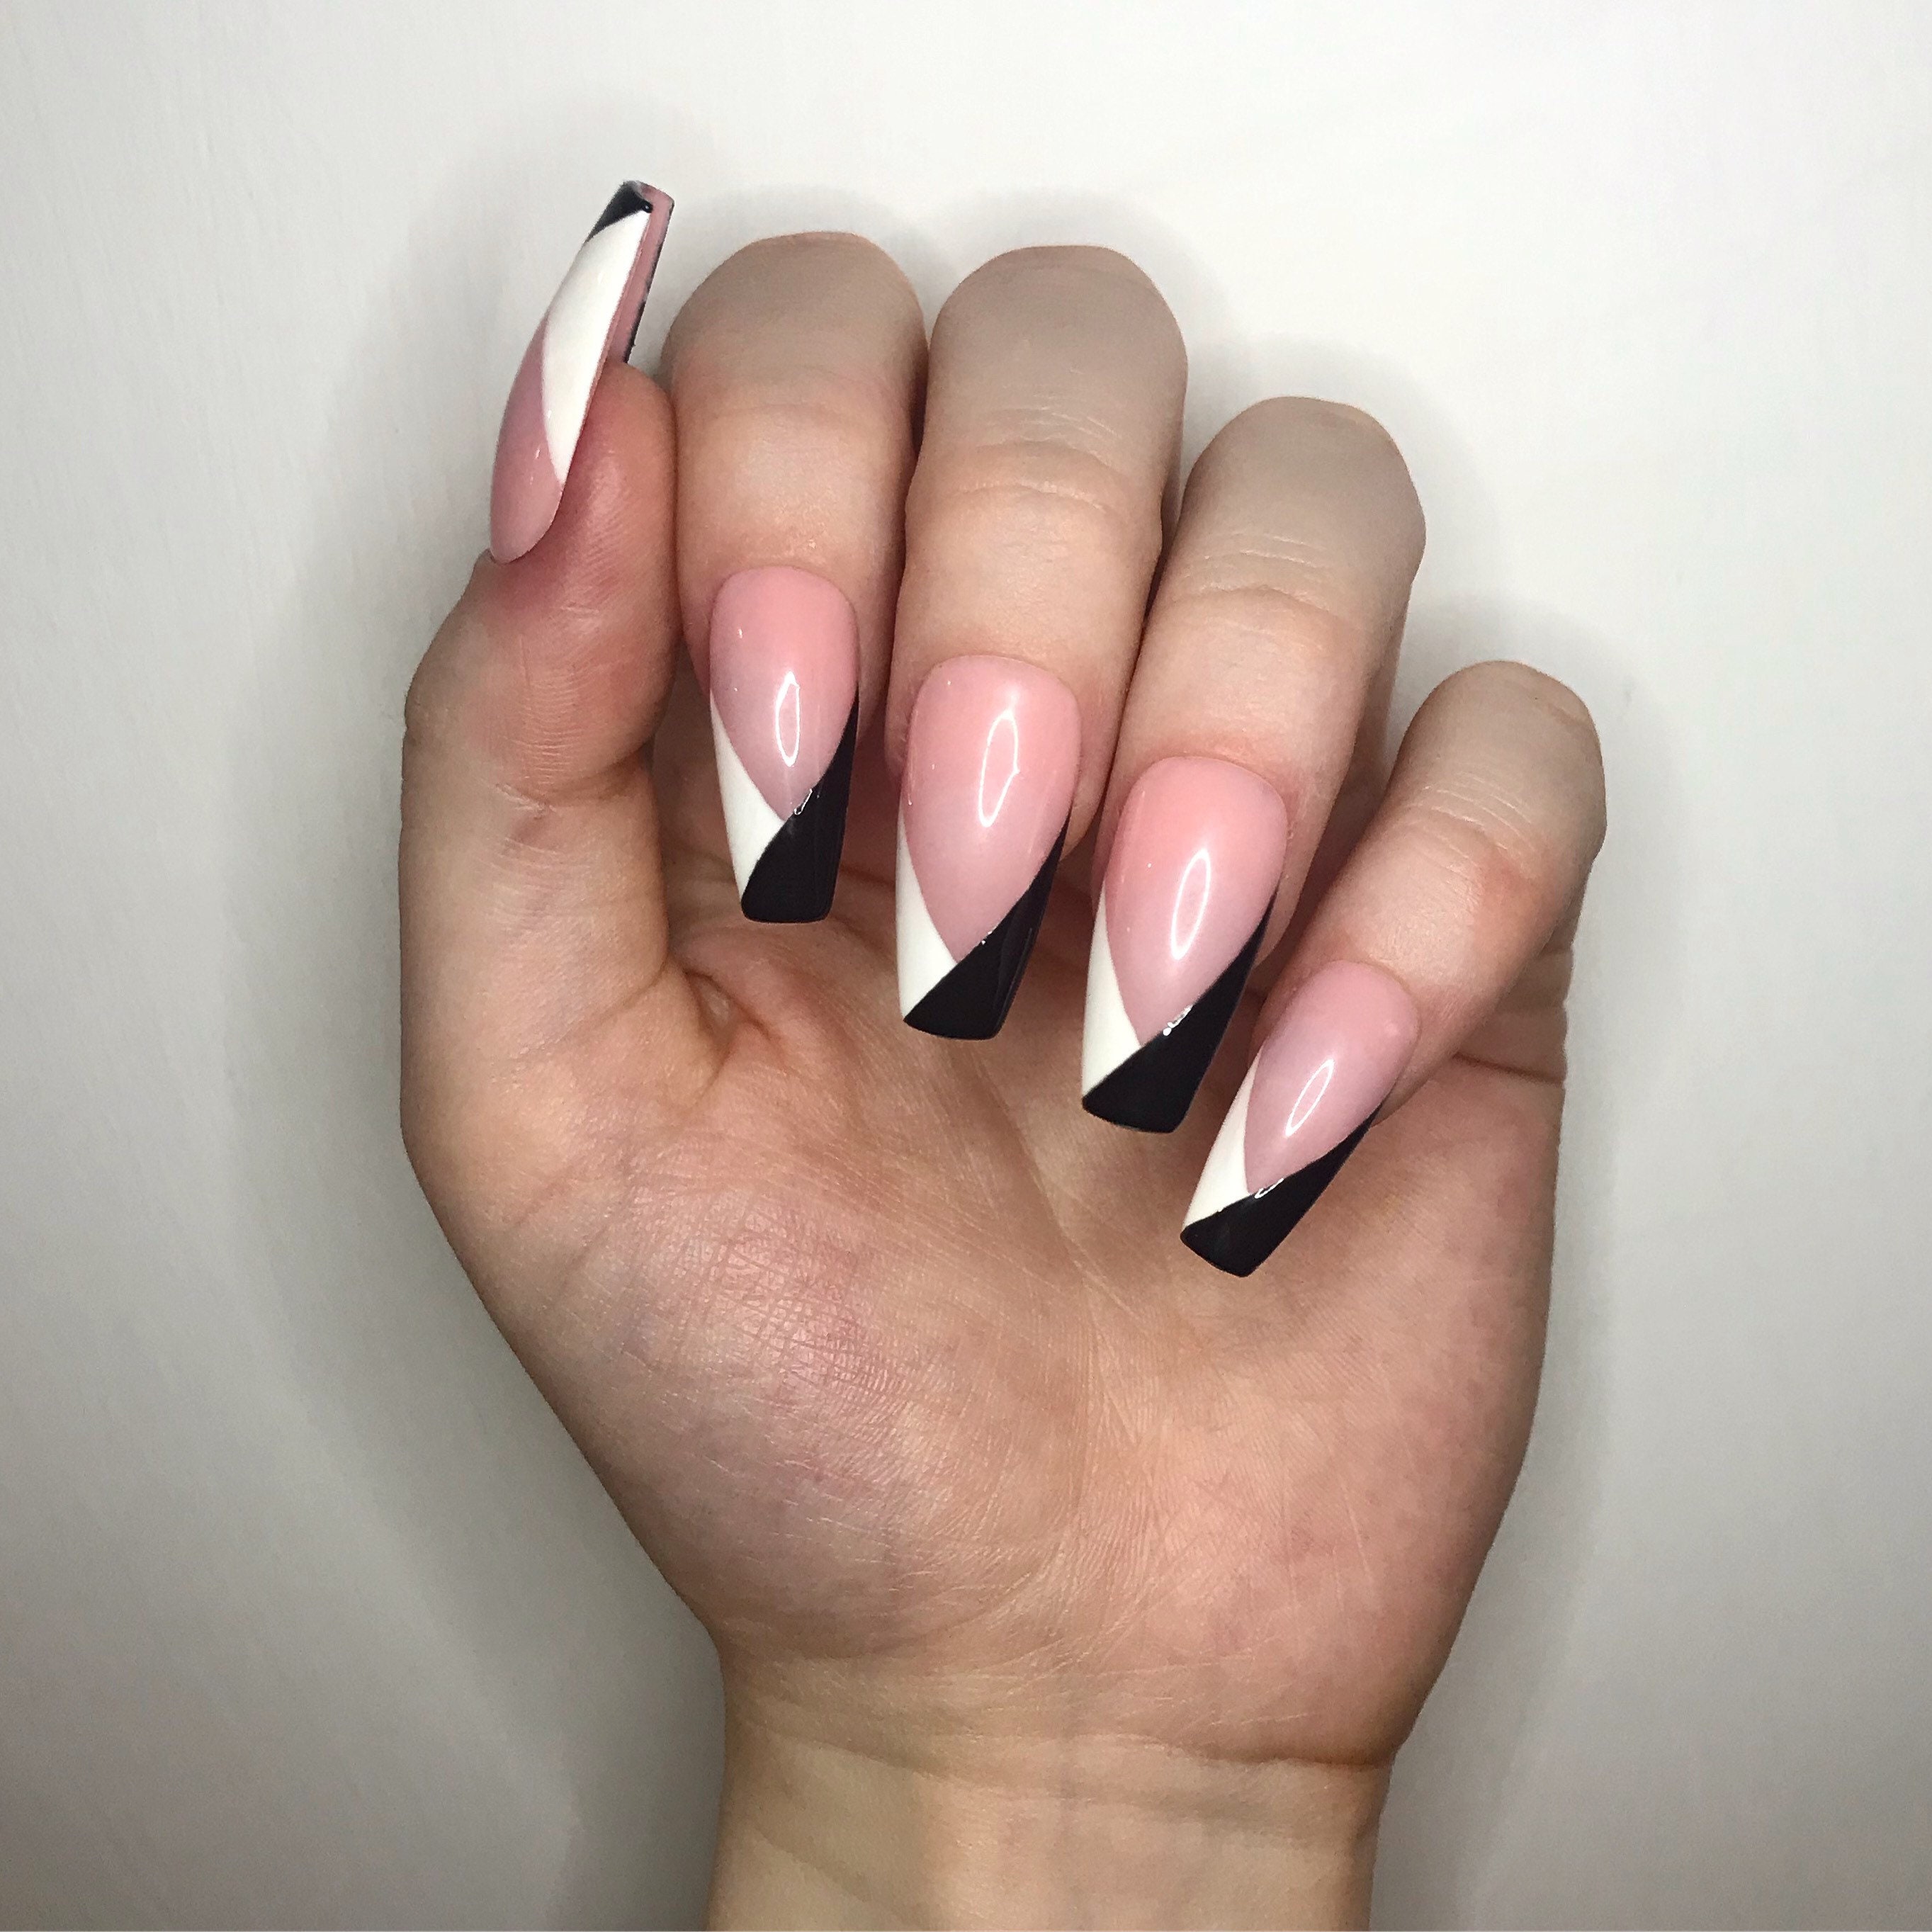 Ariana grande nails - Etsy México